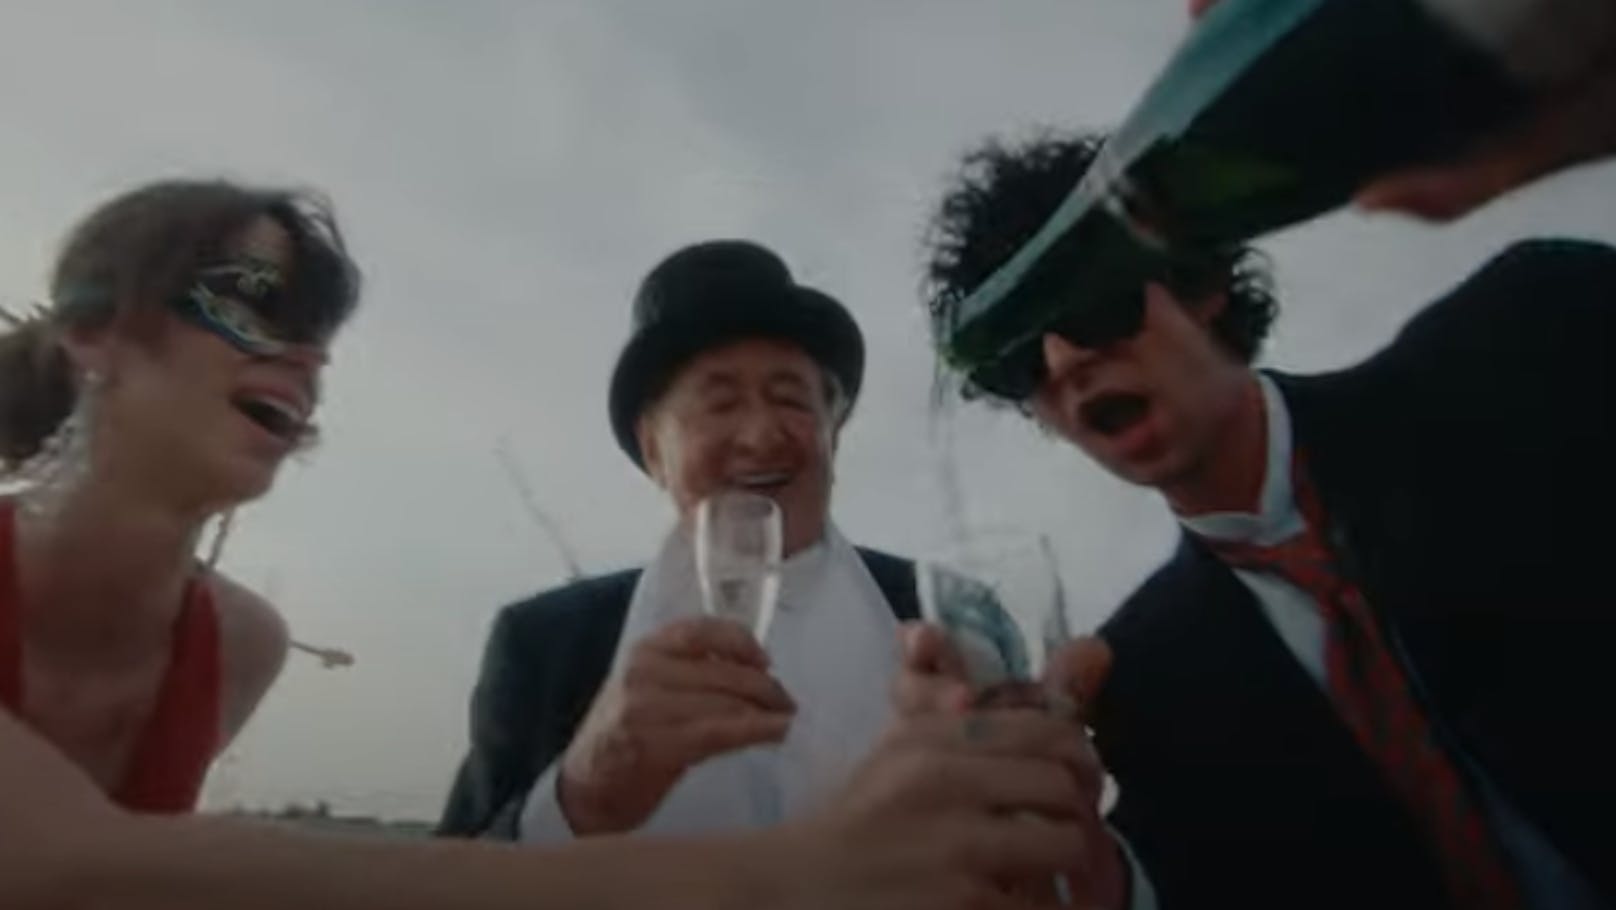 Richard Lugner als Star in neuem Musik-Video